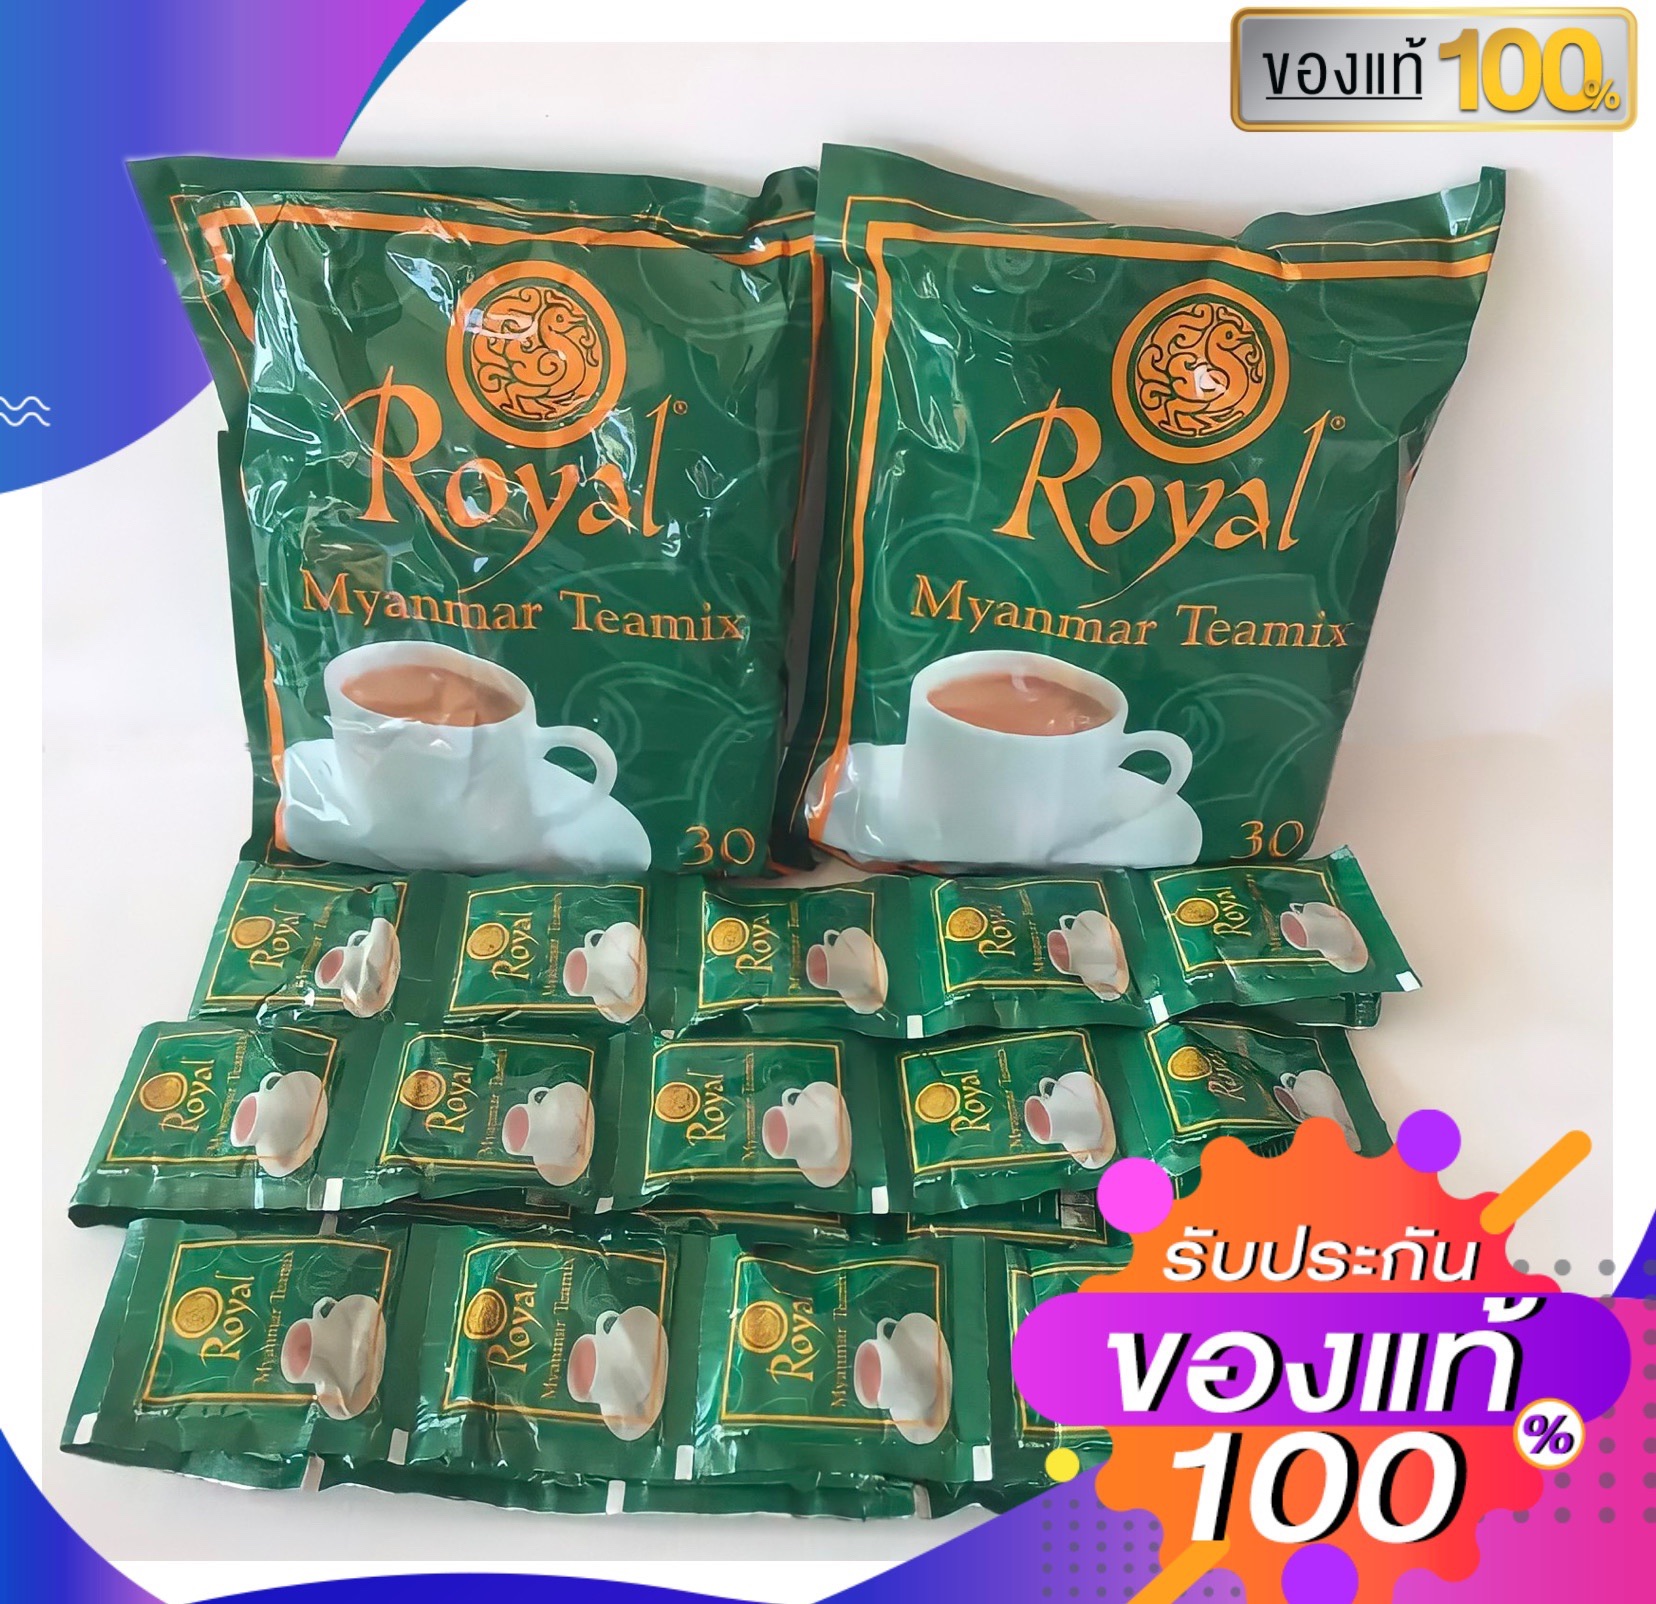 ส่งฟรี‼️ชานมพม่า ชาพม่า ชาroyal myanmar tea ชาร้อน ชาเย็น ชาพม่า3in1 แพ็ค30ซอง